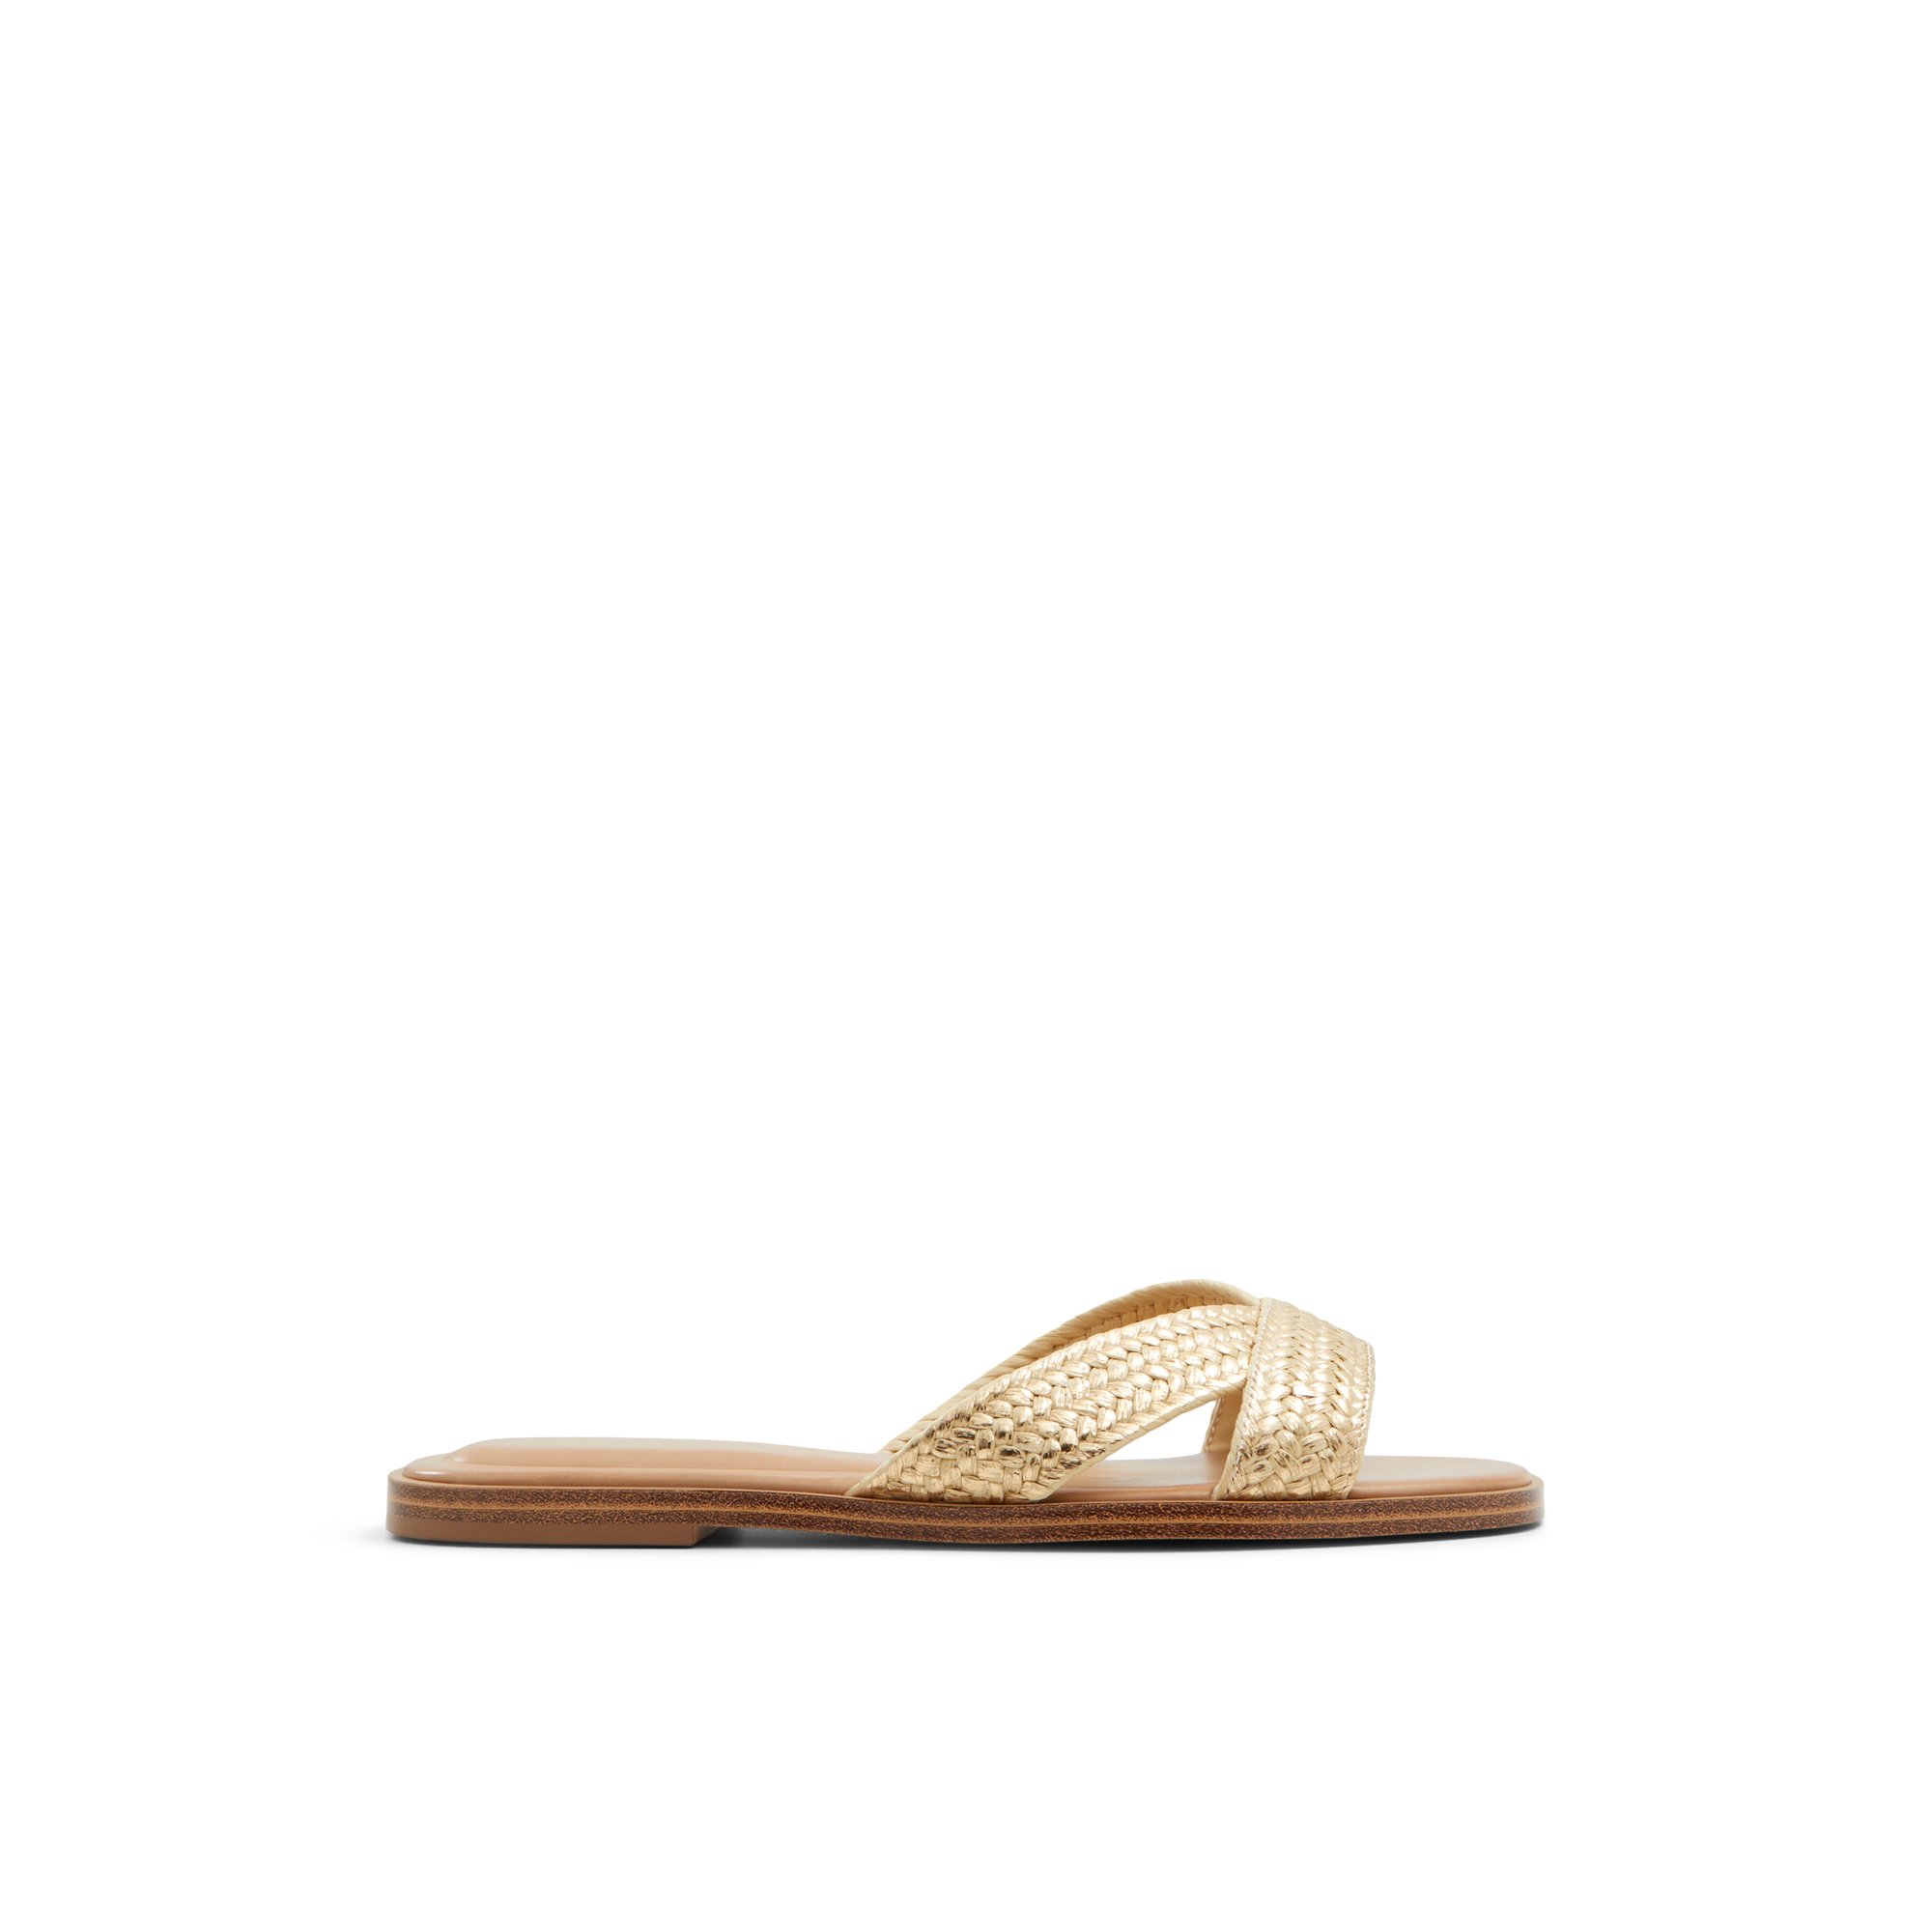 ALDO Caria - Women's Sandals Flats - Gold